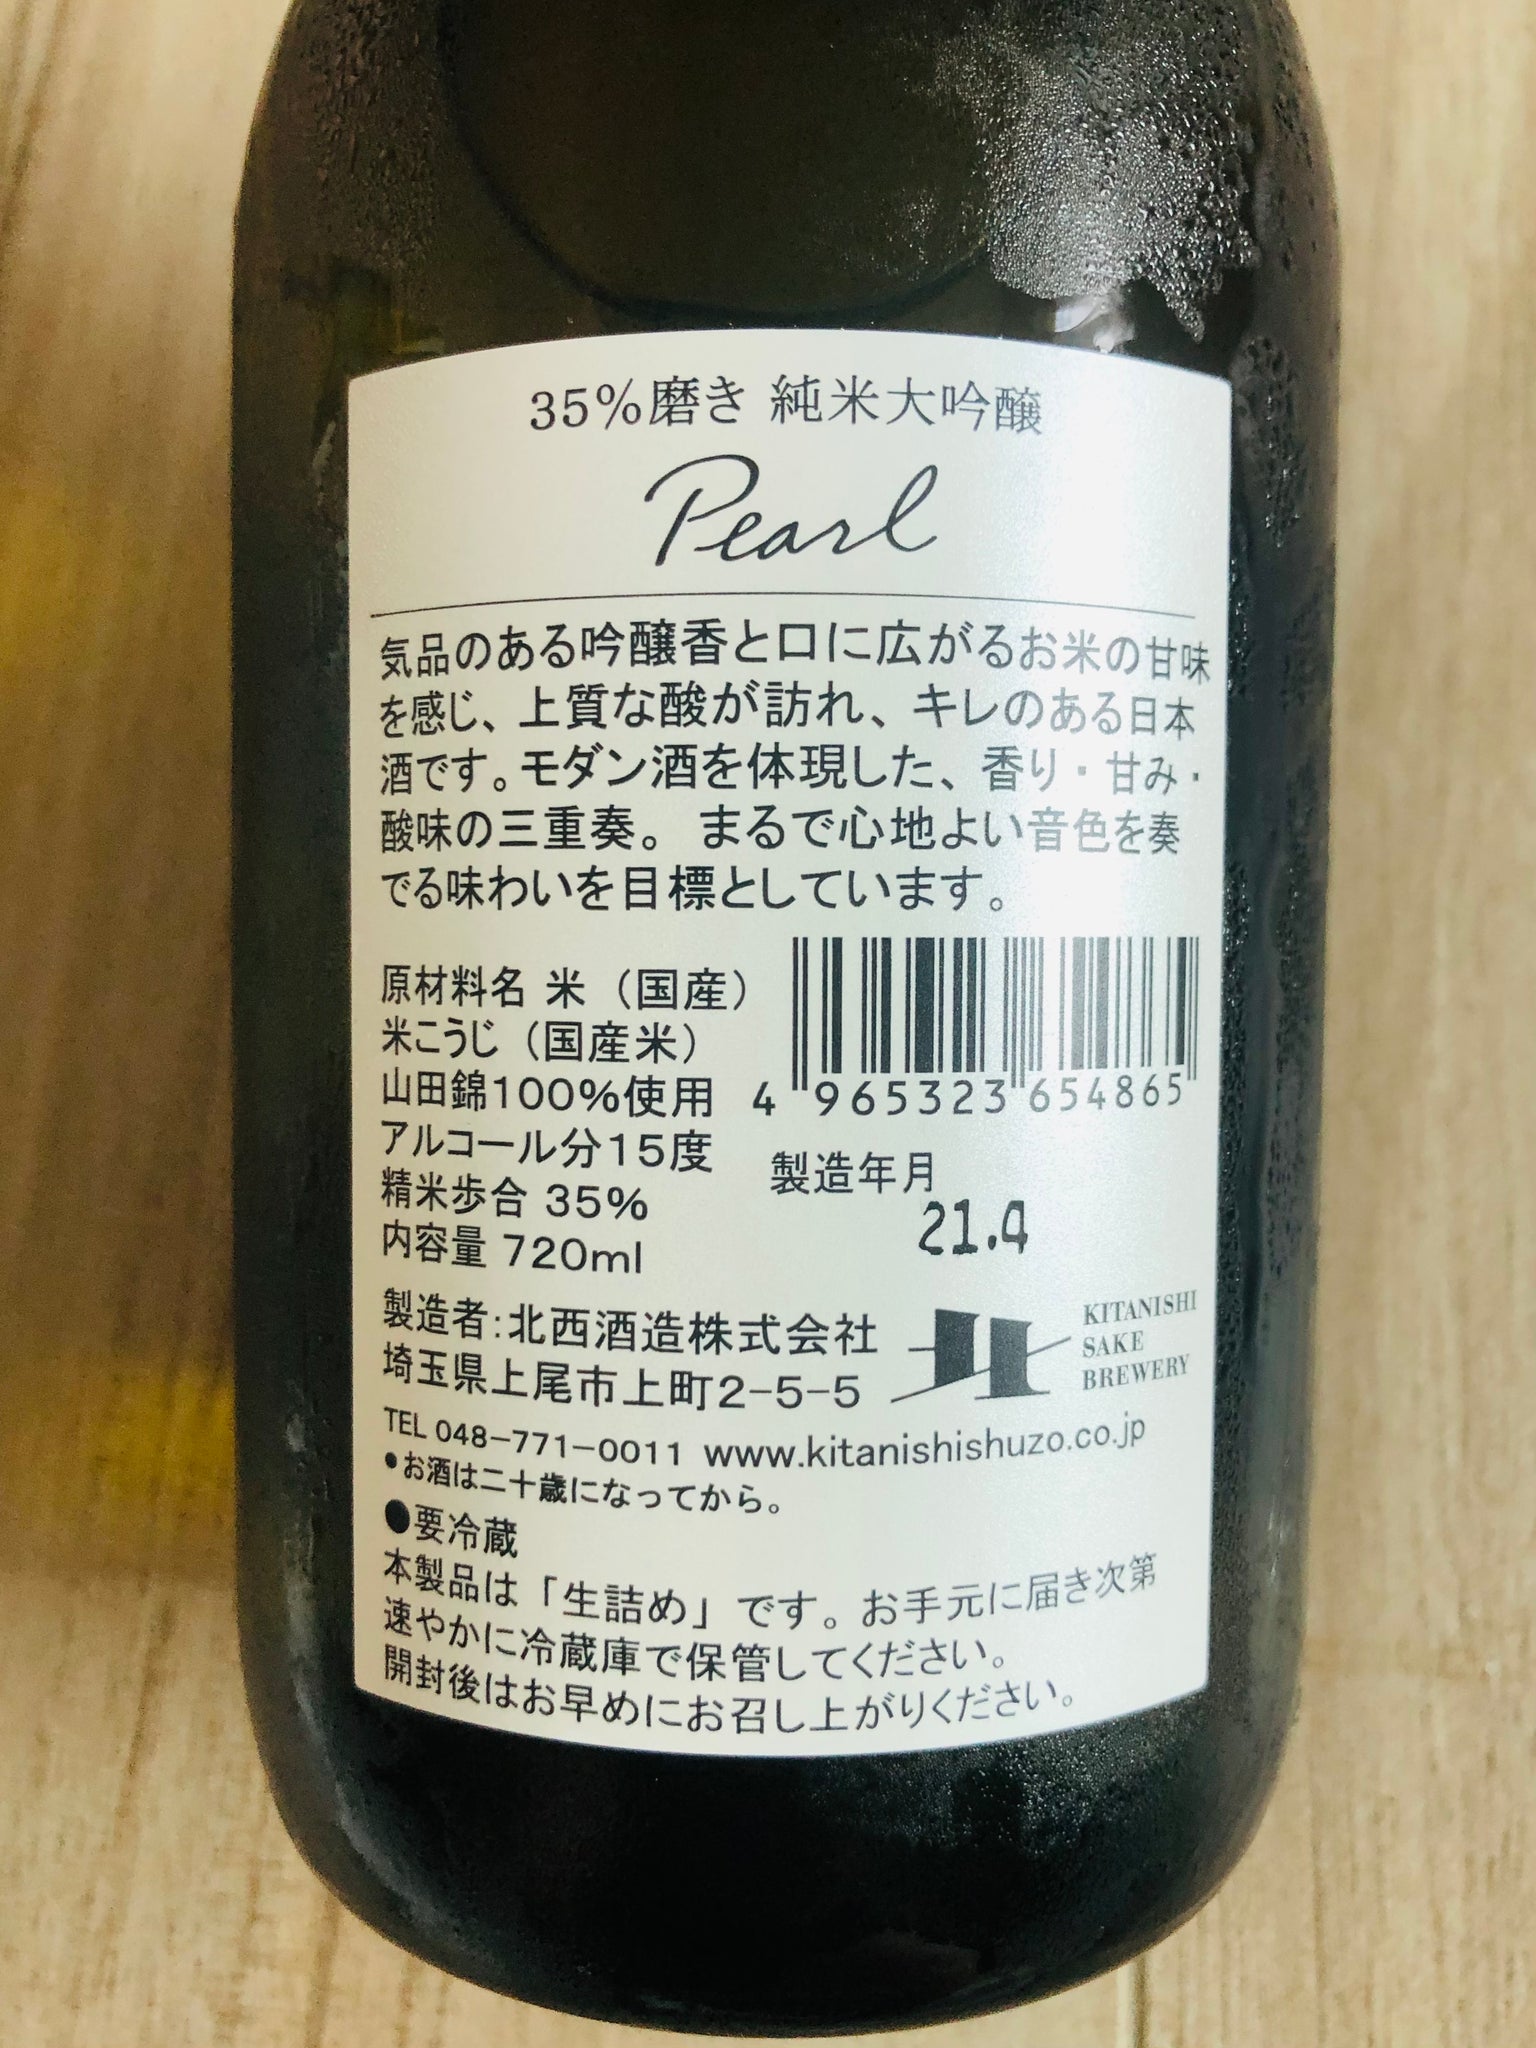 【北西酒造 】 Pearl 純米大吟醸 山田錦35 日本清酒 720ml